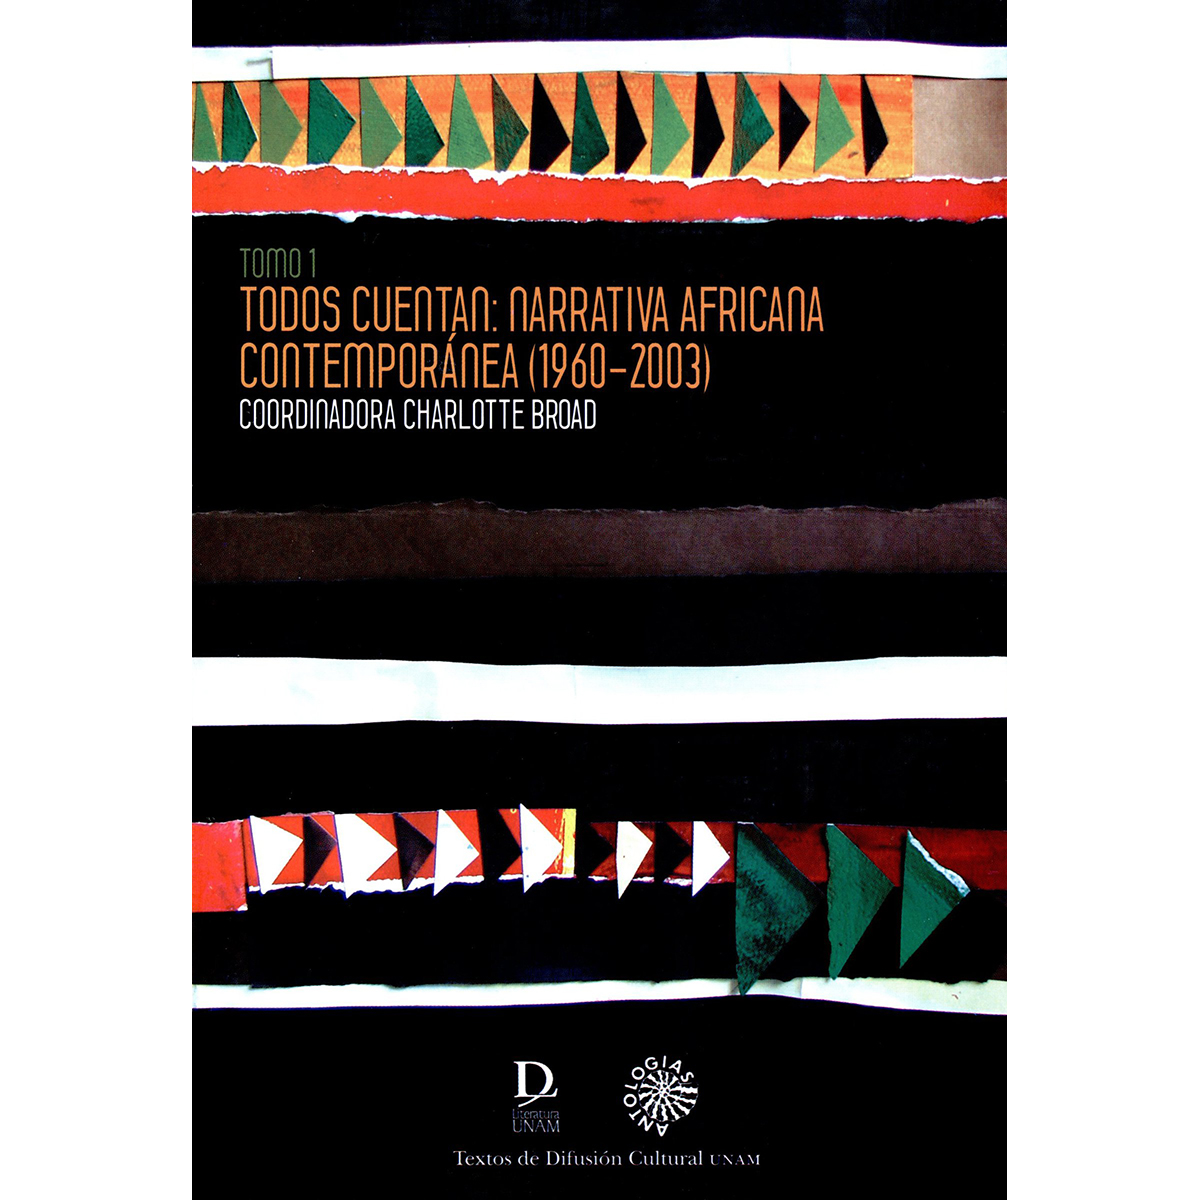 TODOS CUENTAN. NARRATIVA AFRICANA CONTEMPORÁNEA 1960-2003 TOMO 1 Y TOMO 2